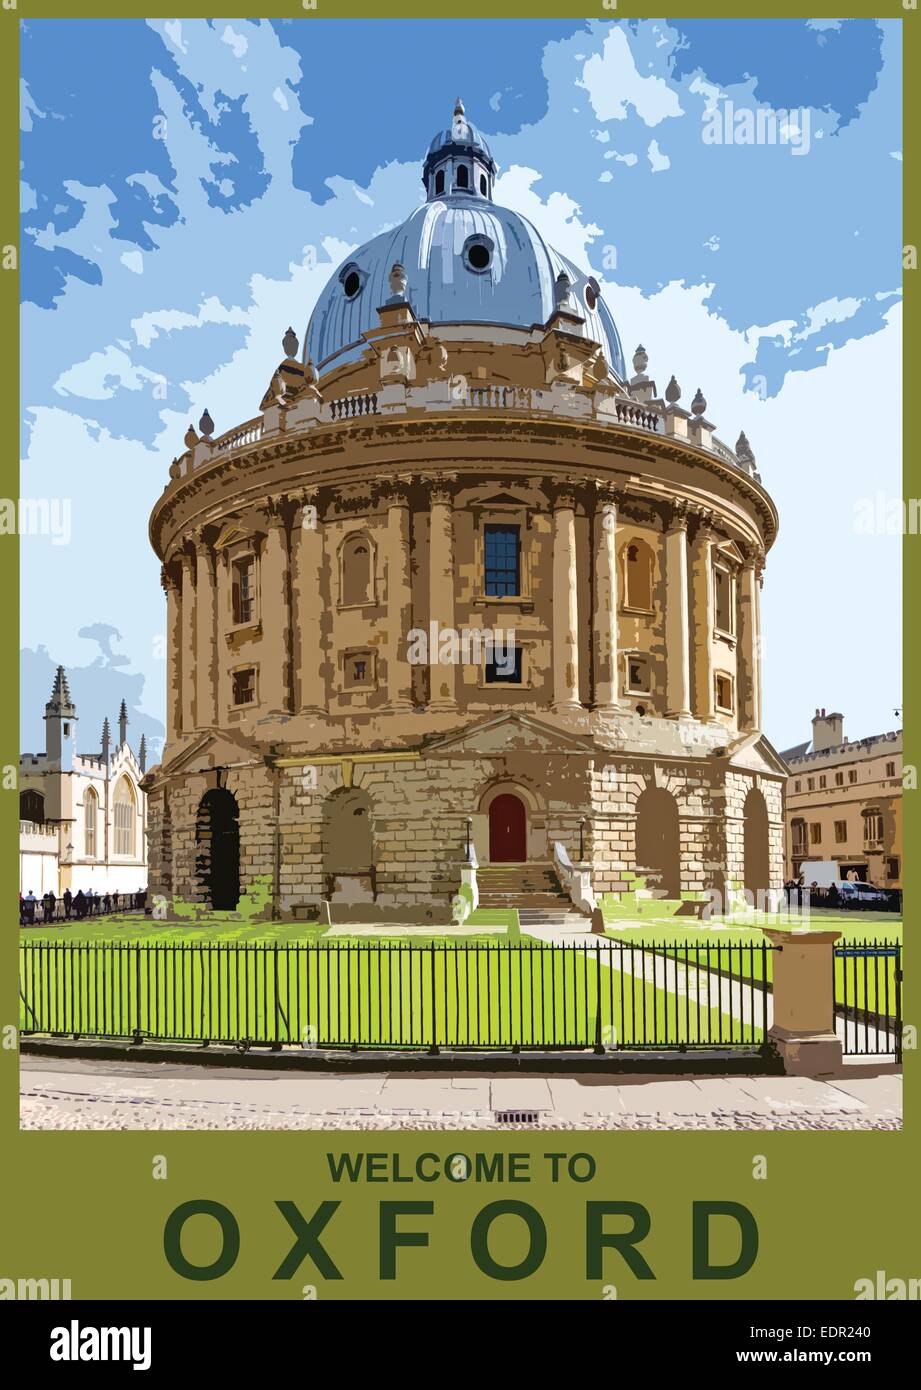 Un style poster illustration de la Radcliffe Camera, Oxford, Oxfordshire, England, UK Banque D'Images